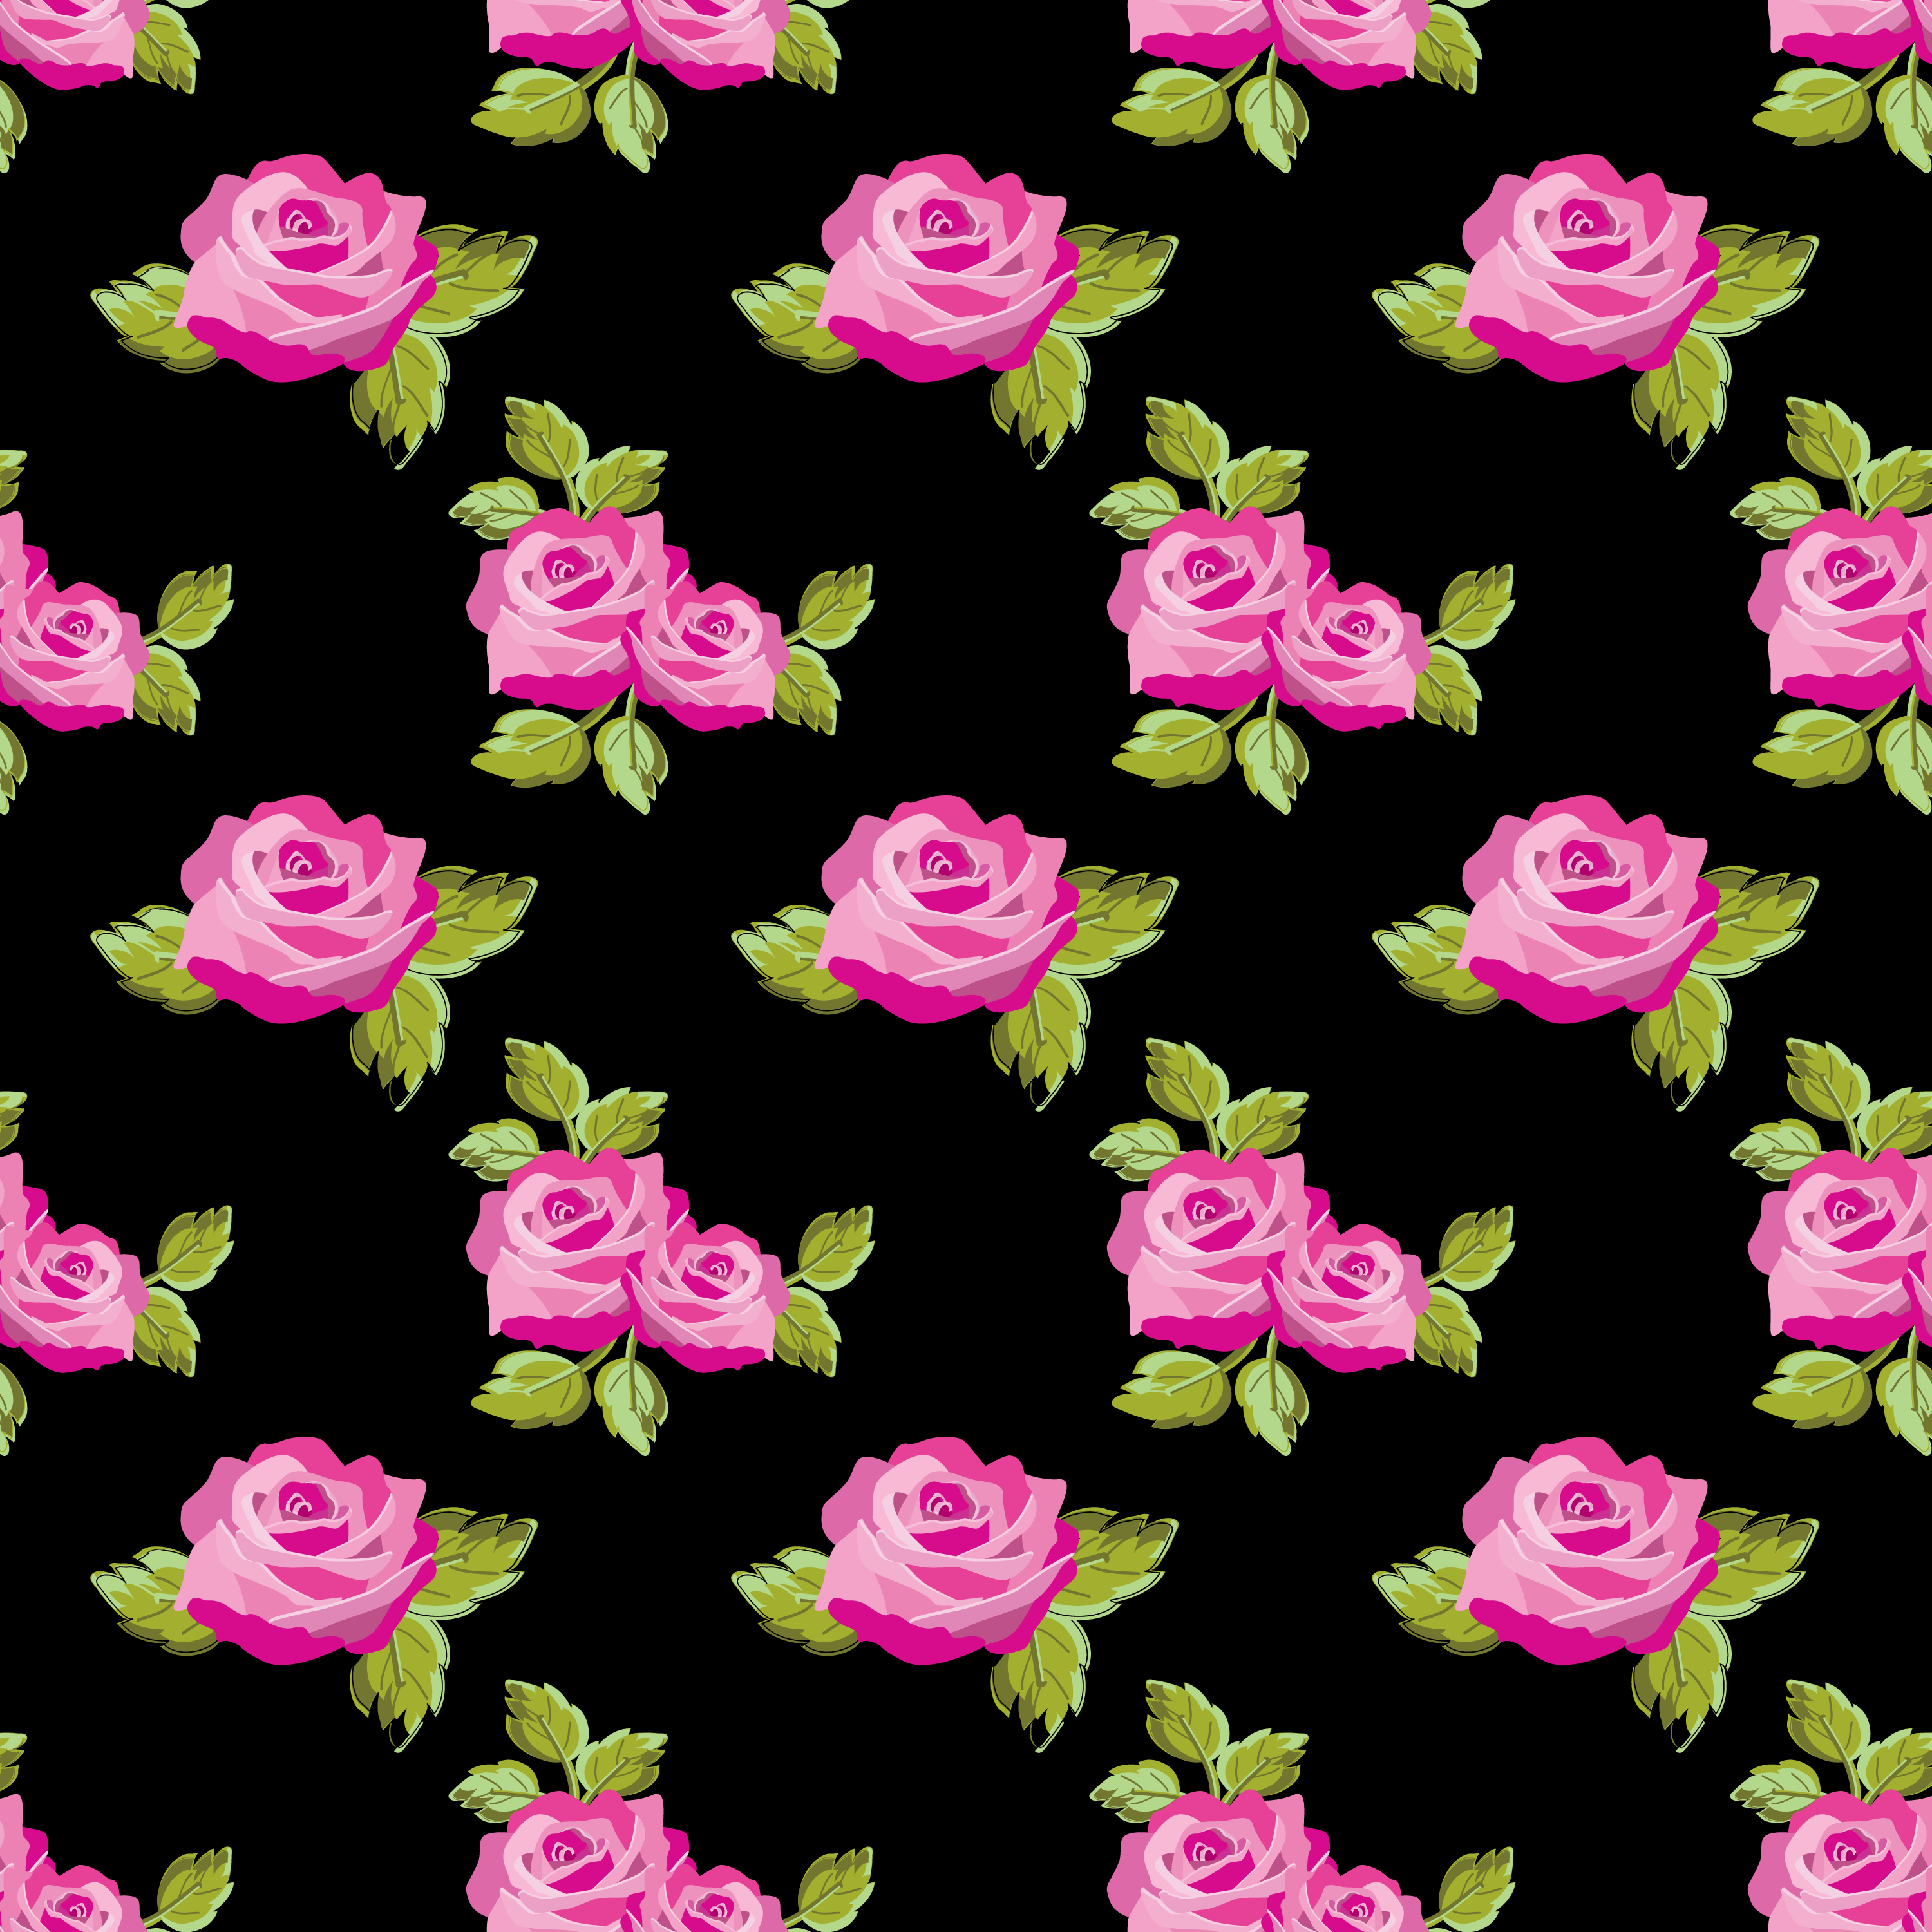 壁紙 背景イラスト 花の模様 柄 パターン No 231 赤いバラ 緑葉 黒背景